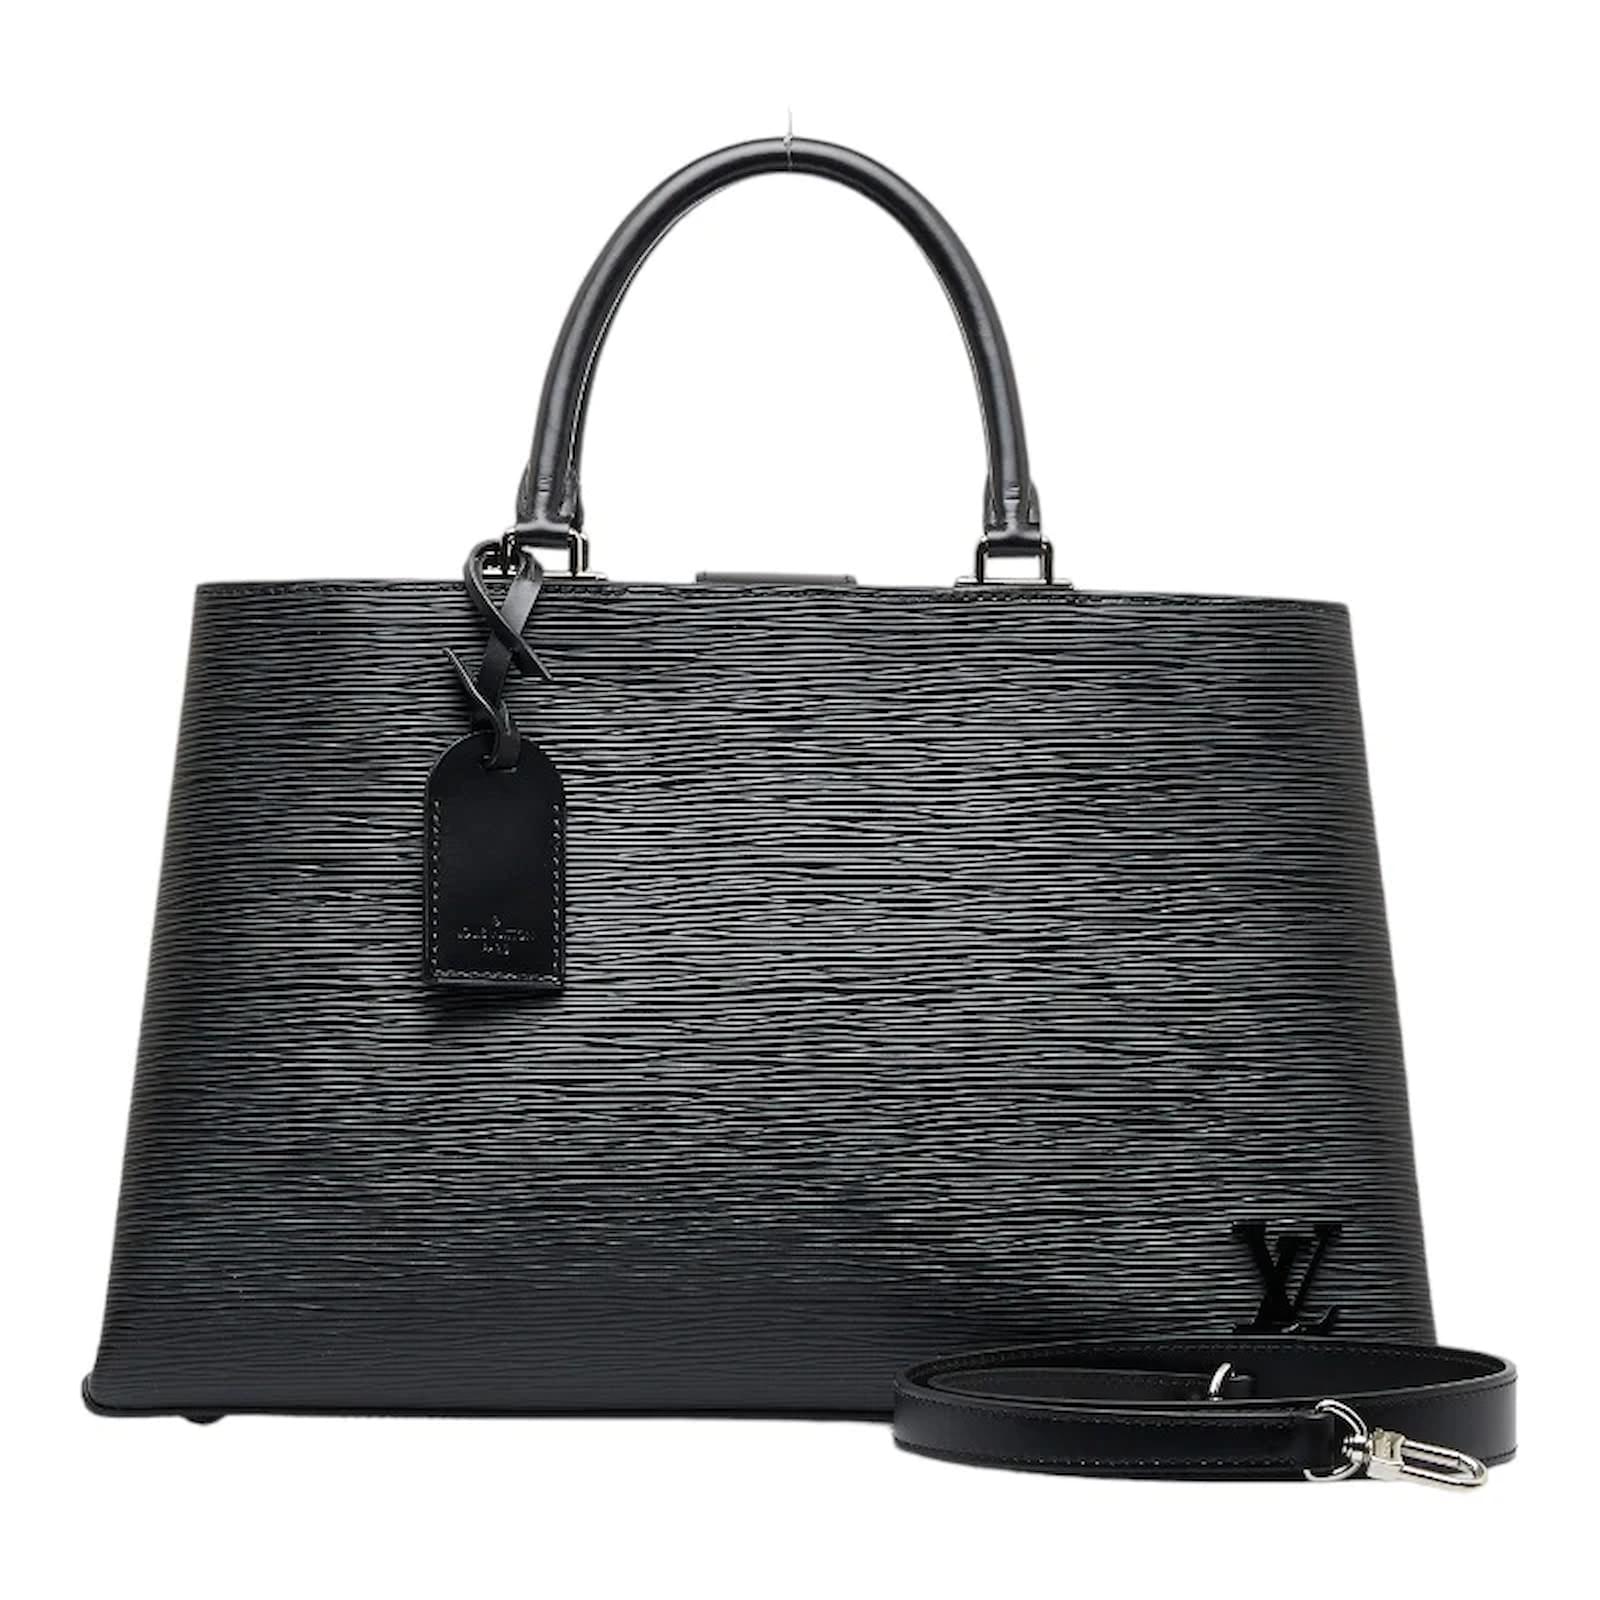 Handbags Louis Vuitton Louis Vuitton Empreinte Saint Germain PM Shoulder Rose Valerine M50353 LV 36744a